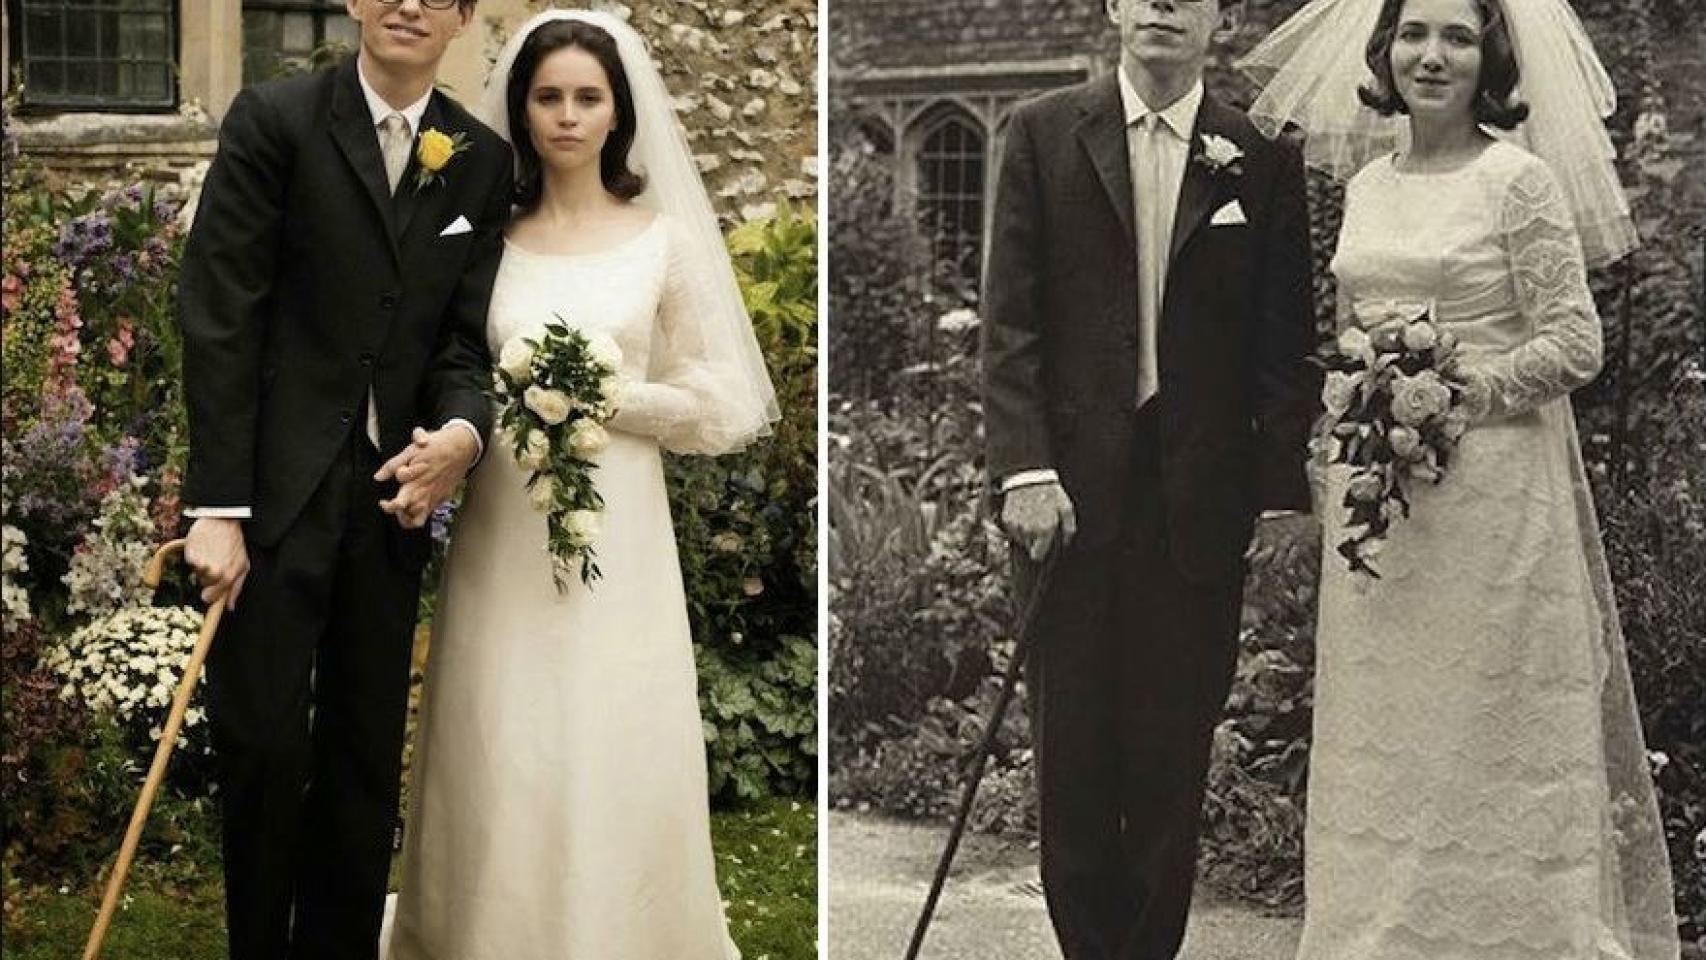 La boda de Stephen Hawking con Jane Wilde, en el que el físico tuvo que sostenerse con un bastón dados los primeros síntomas de su enfermedad. La escena se recreó en la película 'La teoría del Todo'.